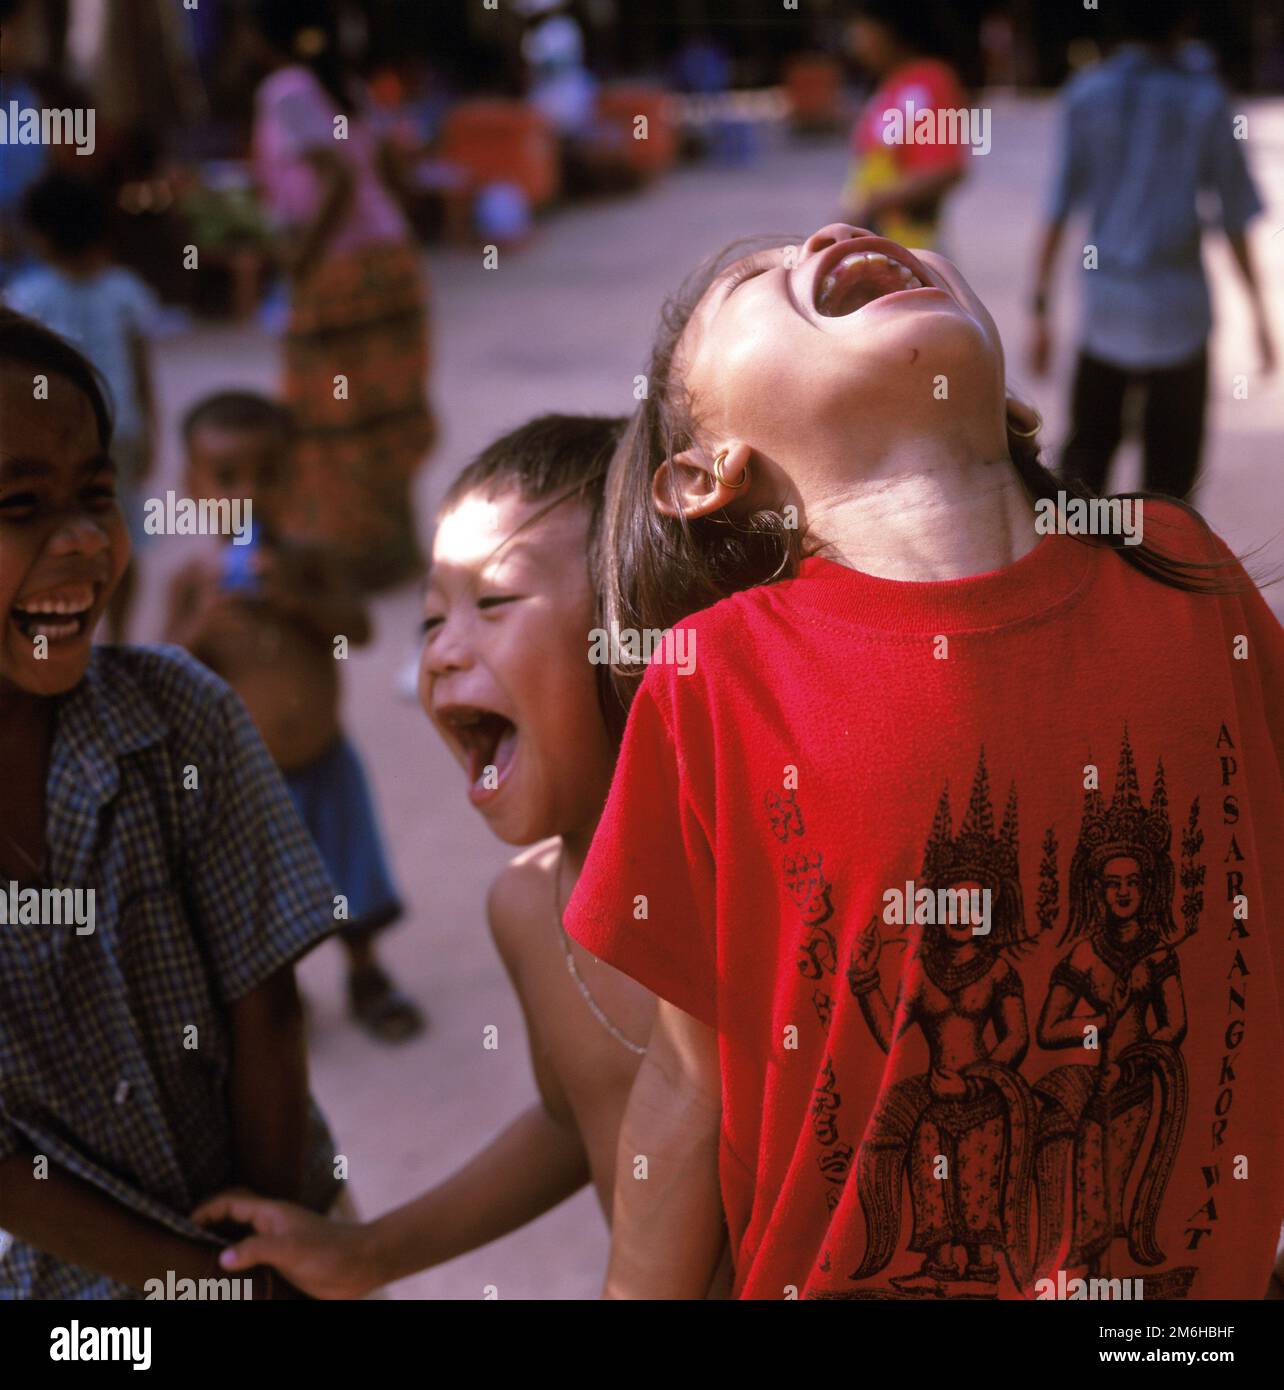 Kinder lachen in der Nähe des Tempels von Tah Prohm in den Tempeln von Angkor. Bildaufnahme 2003. Genaues Datum unbekannt. Stockfoto